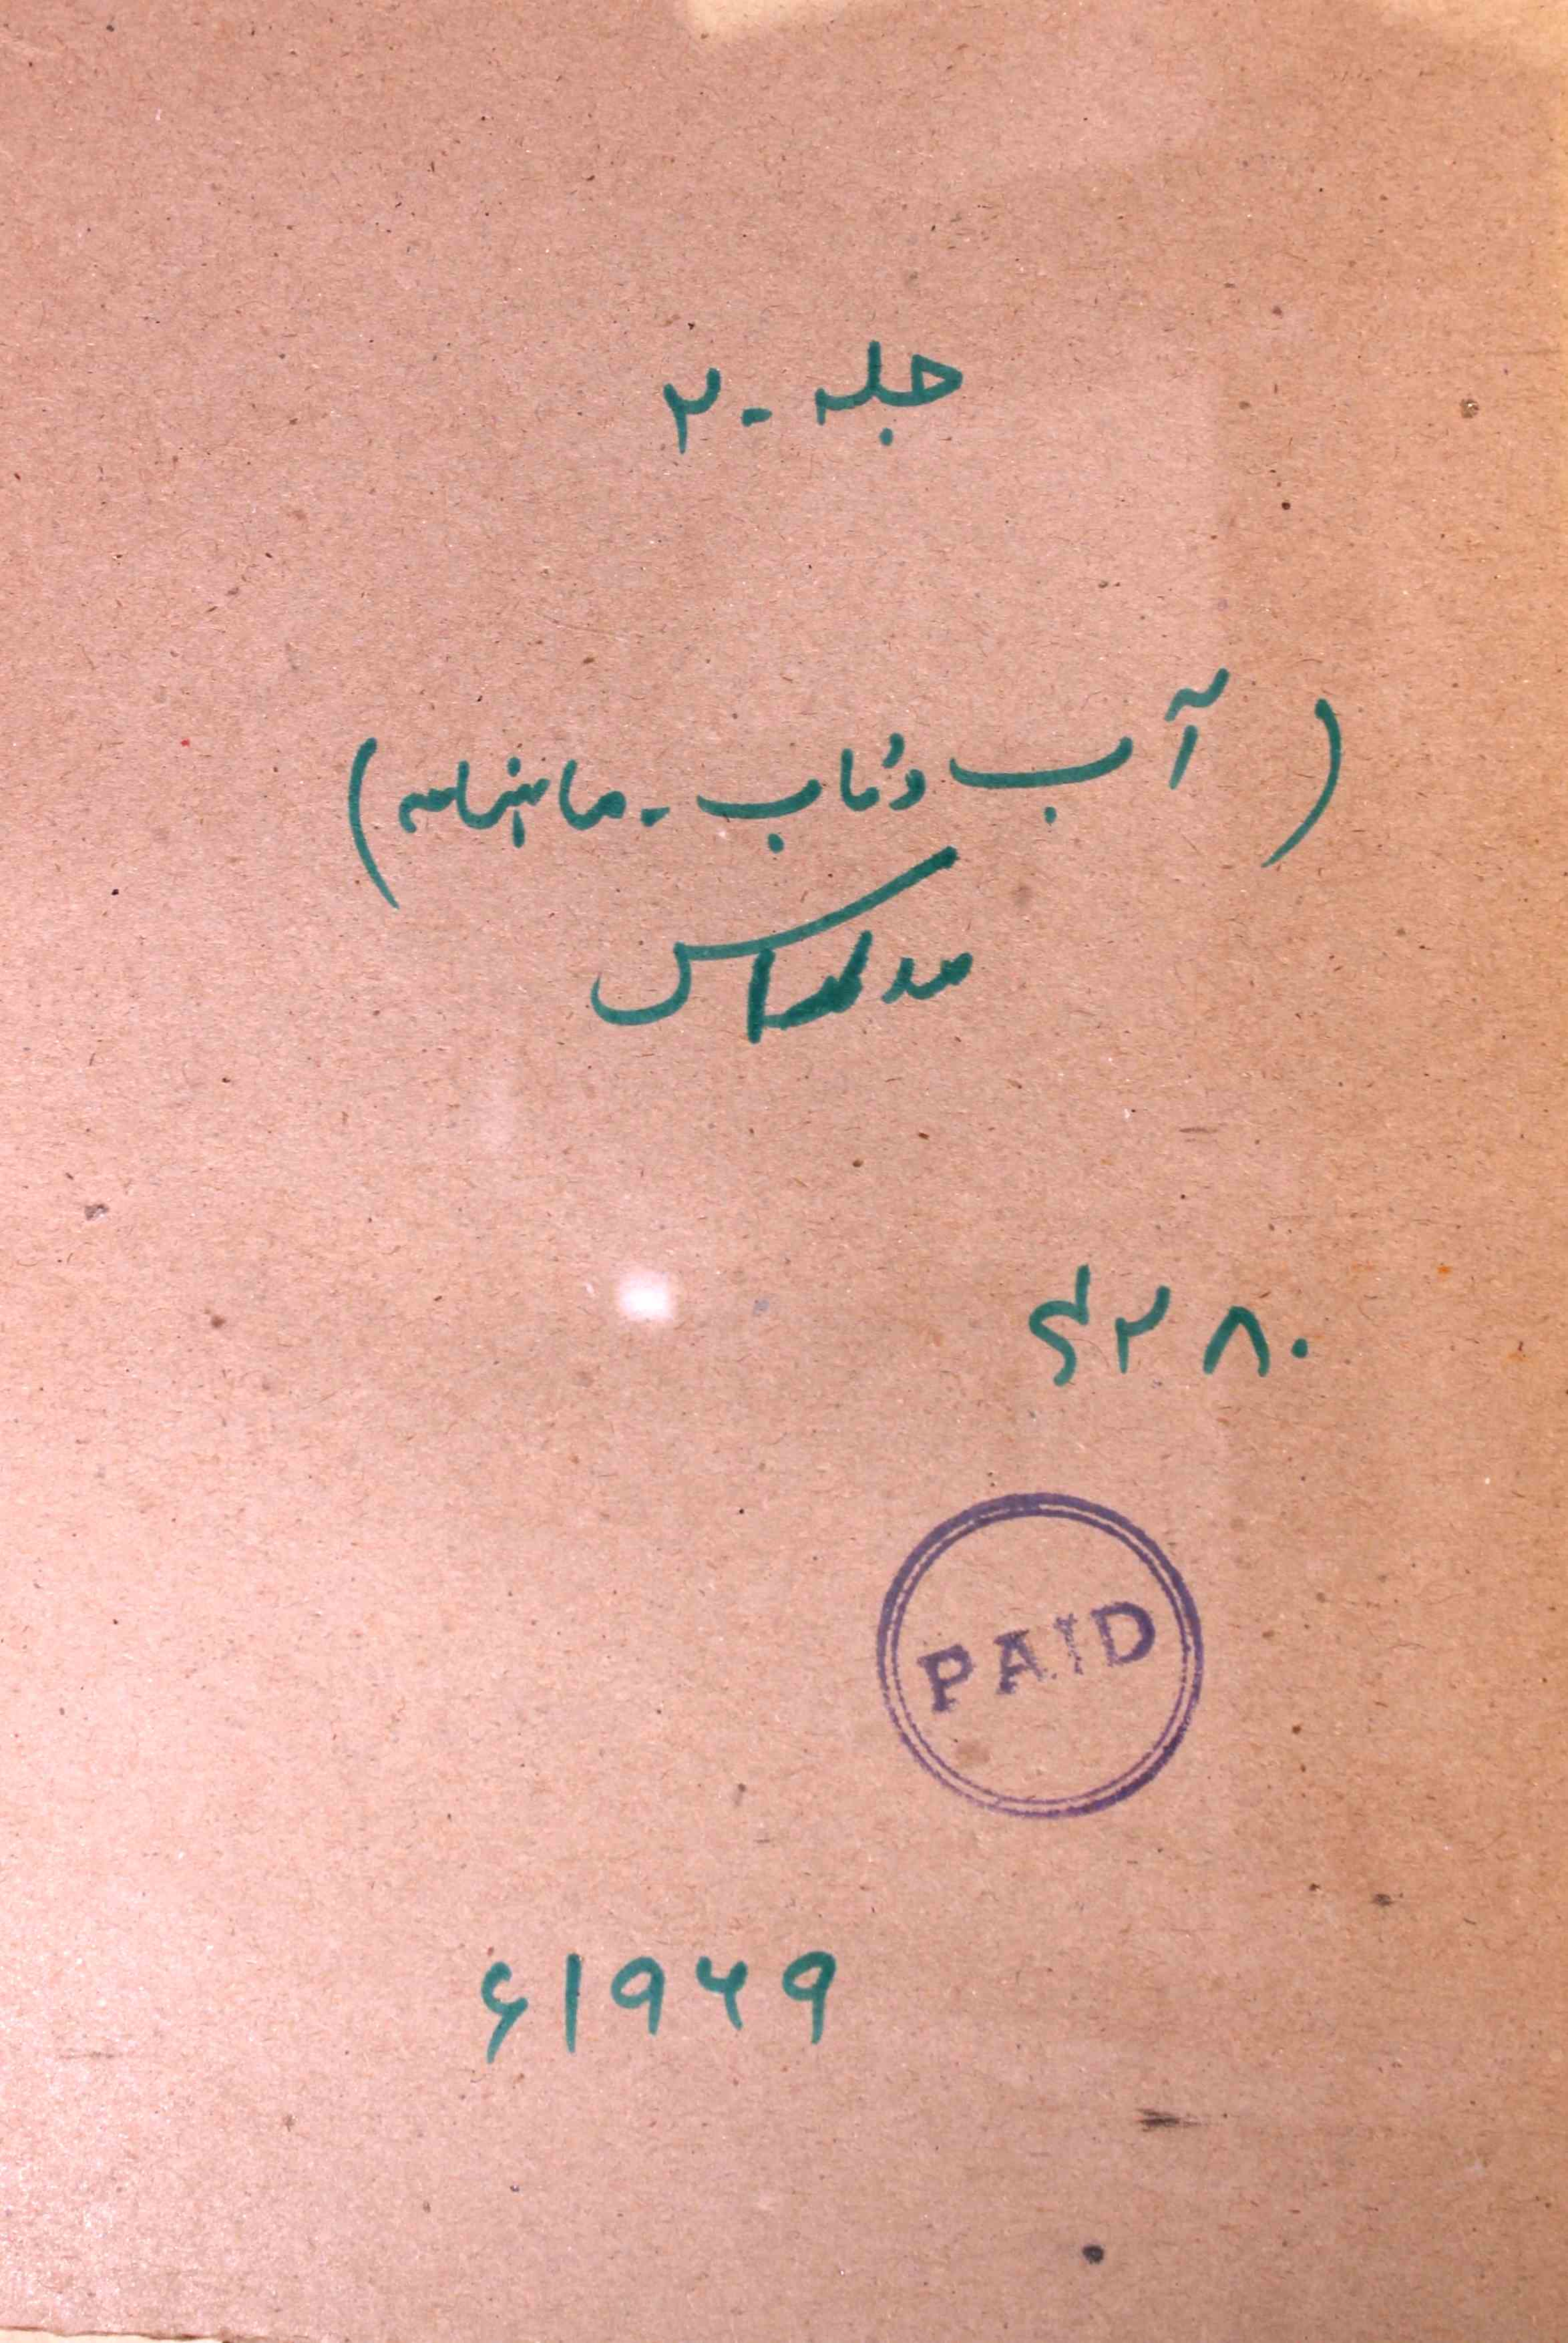 Aab O Taab Jild 2 Shumara 4,5 Febrauary,March 1969-SVK-Shumara Number-004, 005